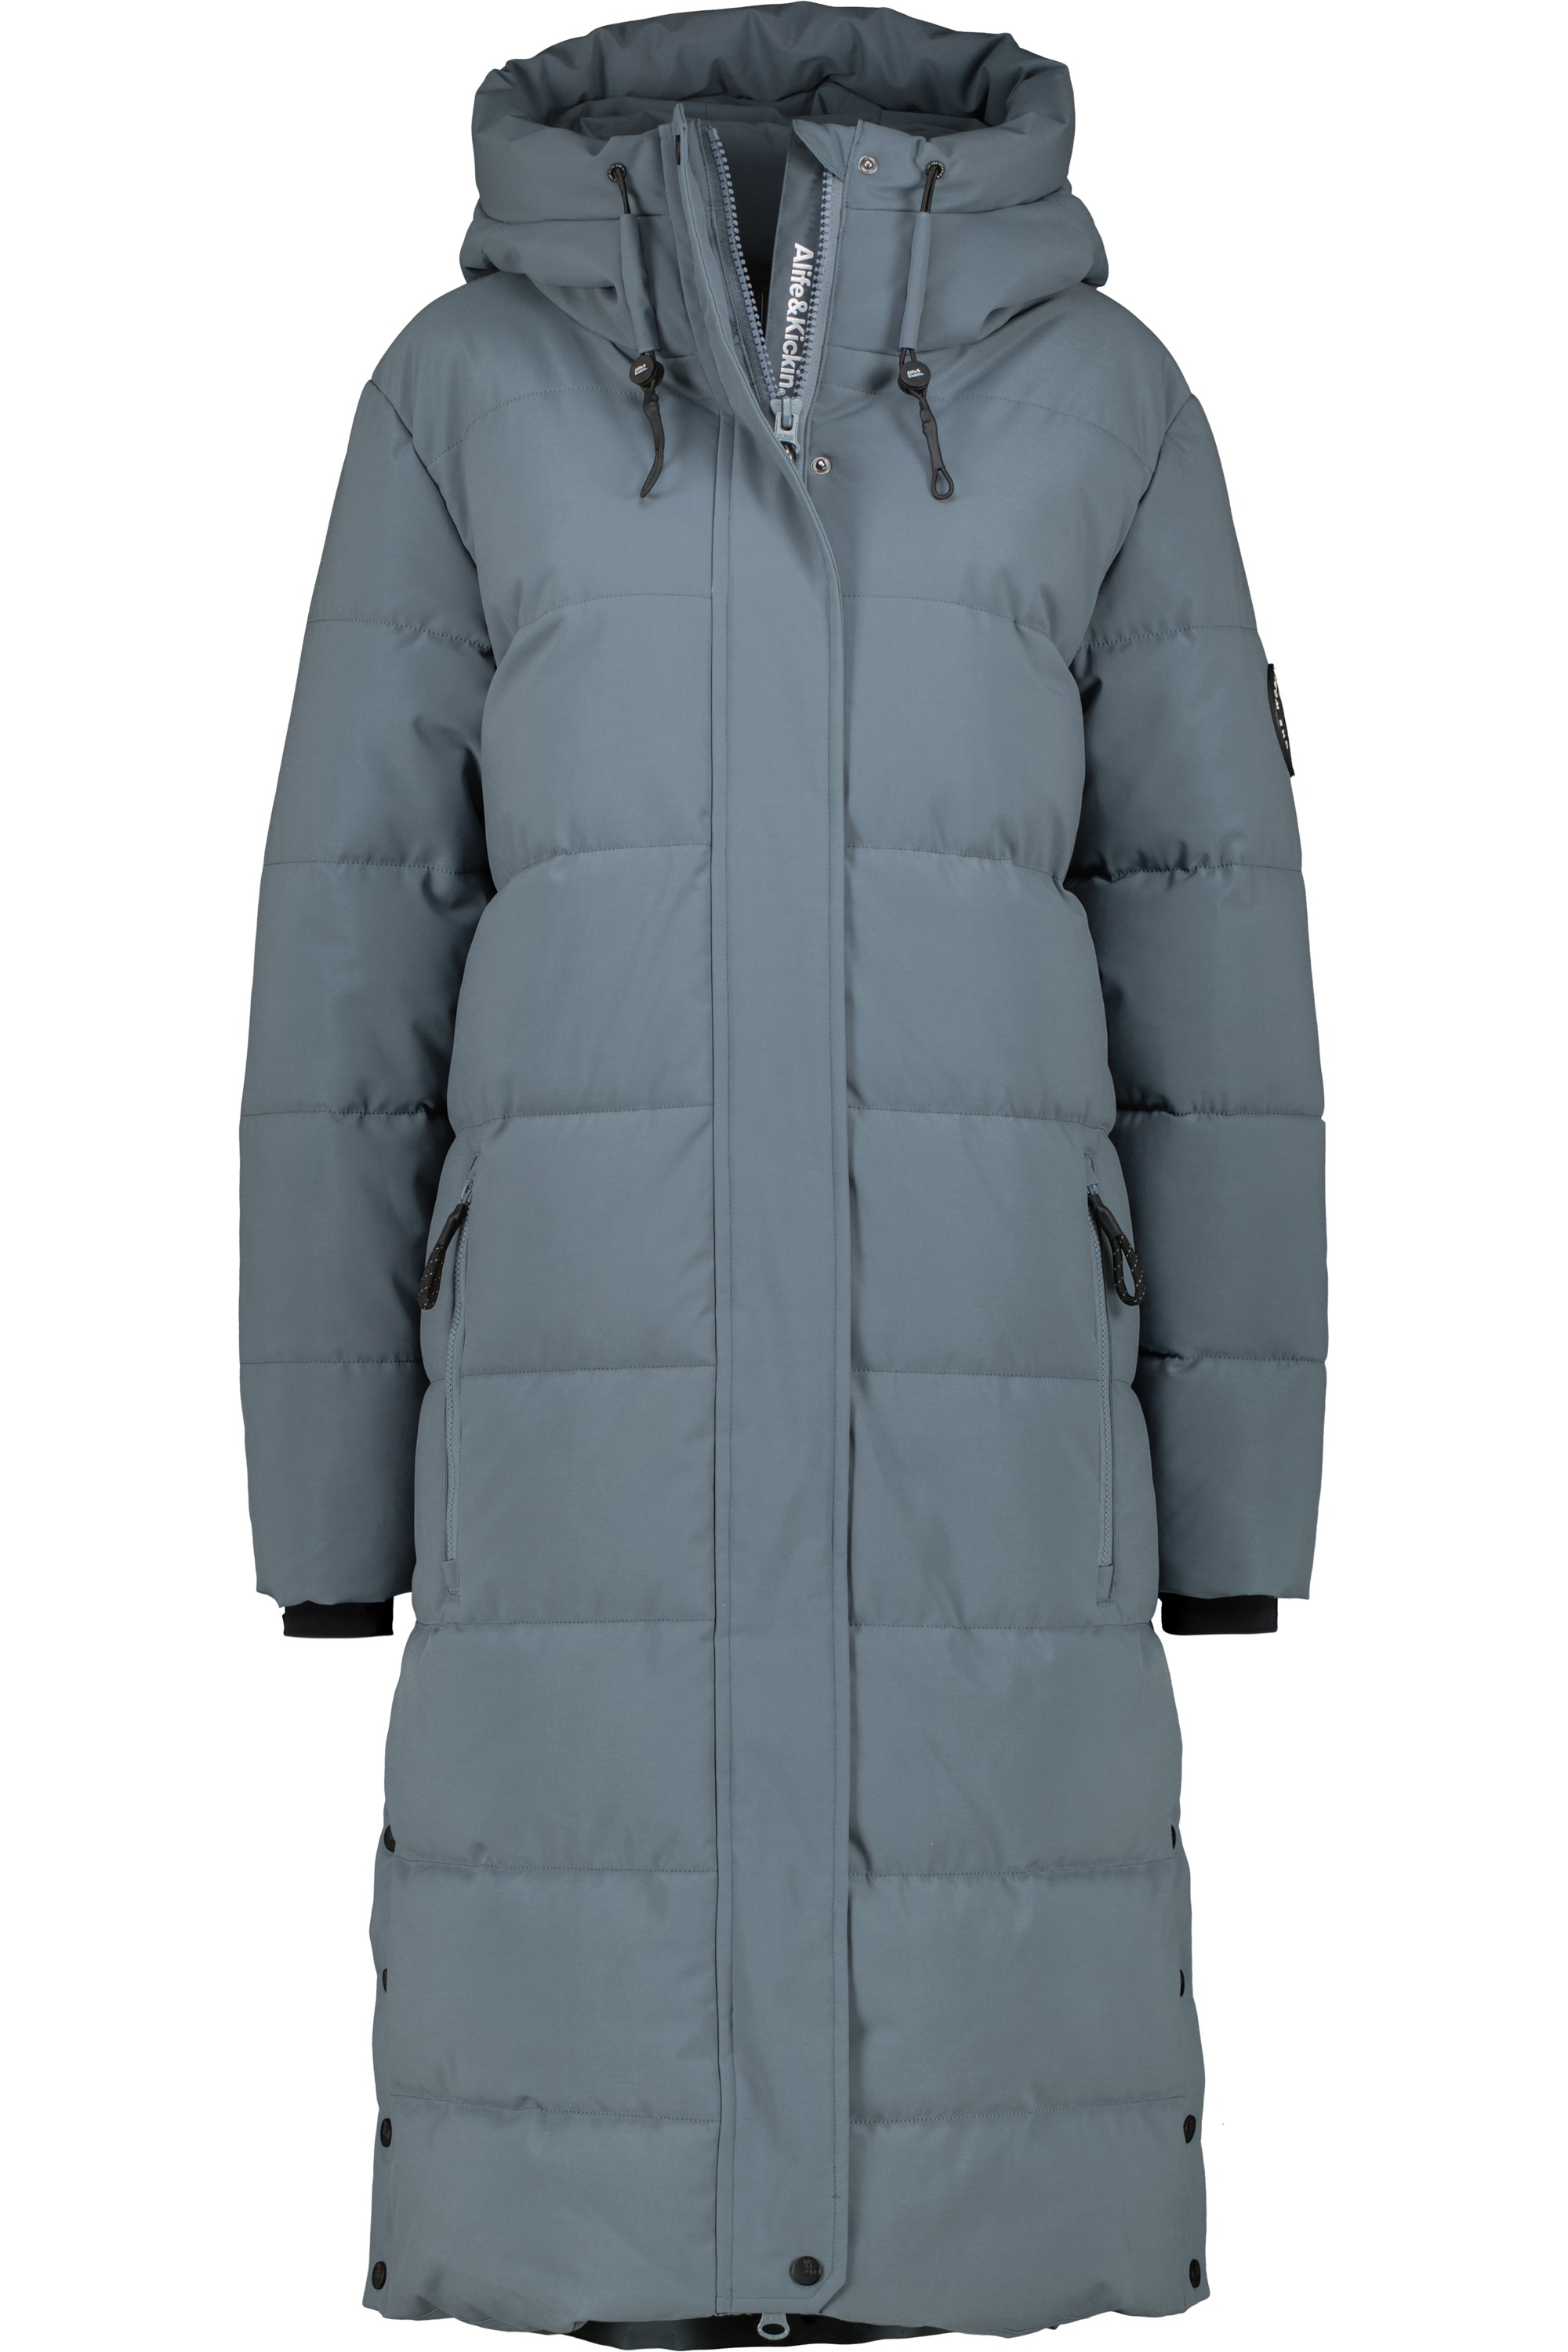 Steppjacke, | Alife A Coat Winterjacke Damen Kickin Winterjacke« BAUR & Puffer bestellen »KatiaAK